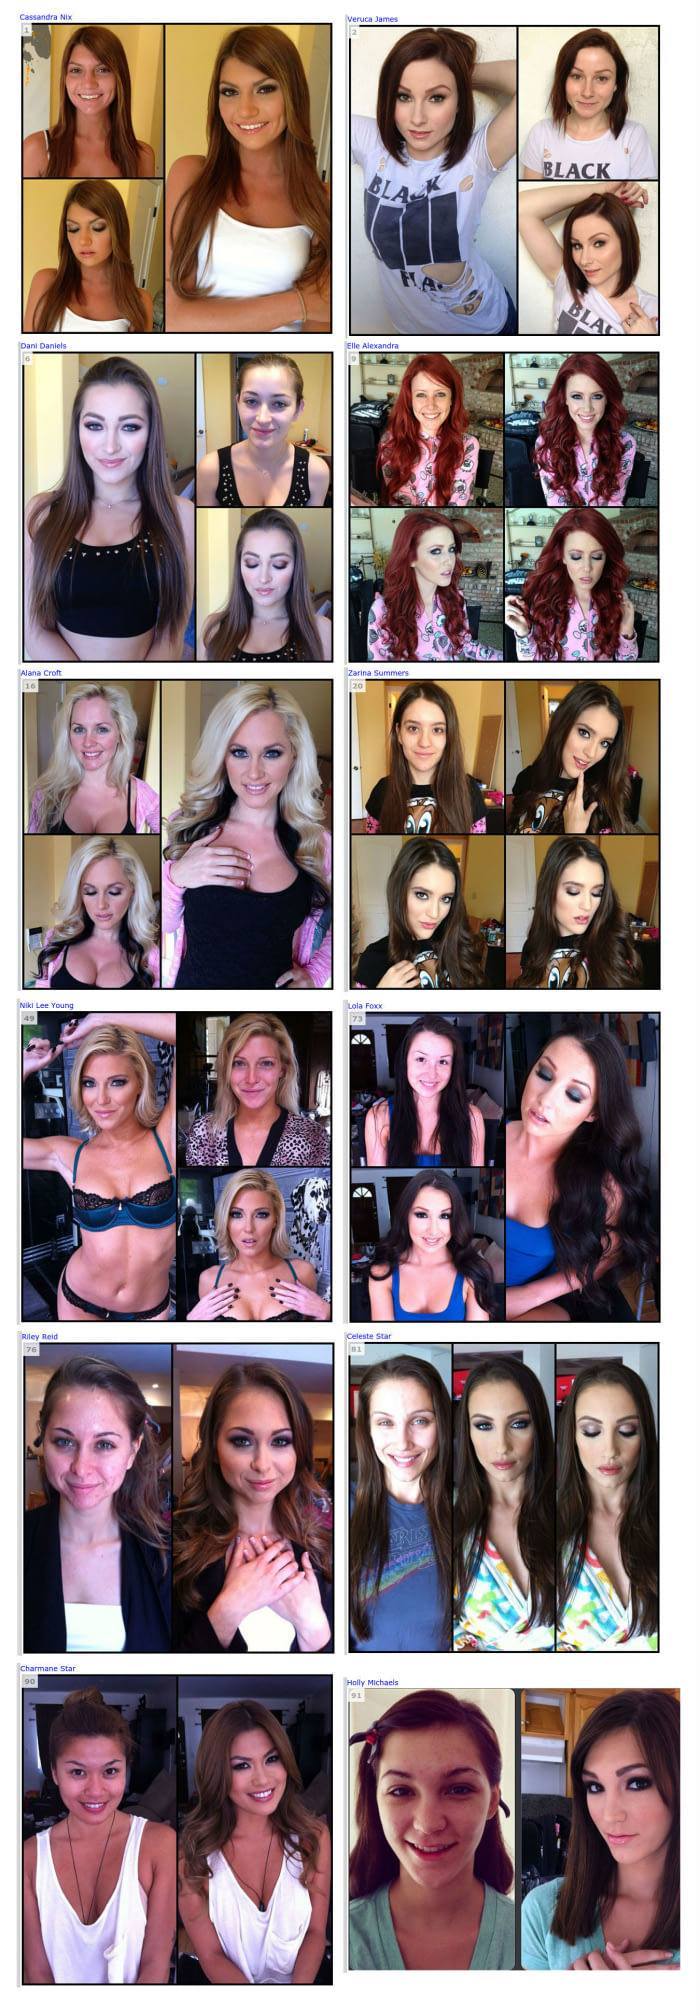 Porn actress before and after make-up - Porn Actors and Porn Actresses, Longpost, No make up, Makeup, Porn actress